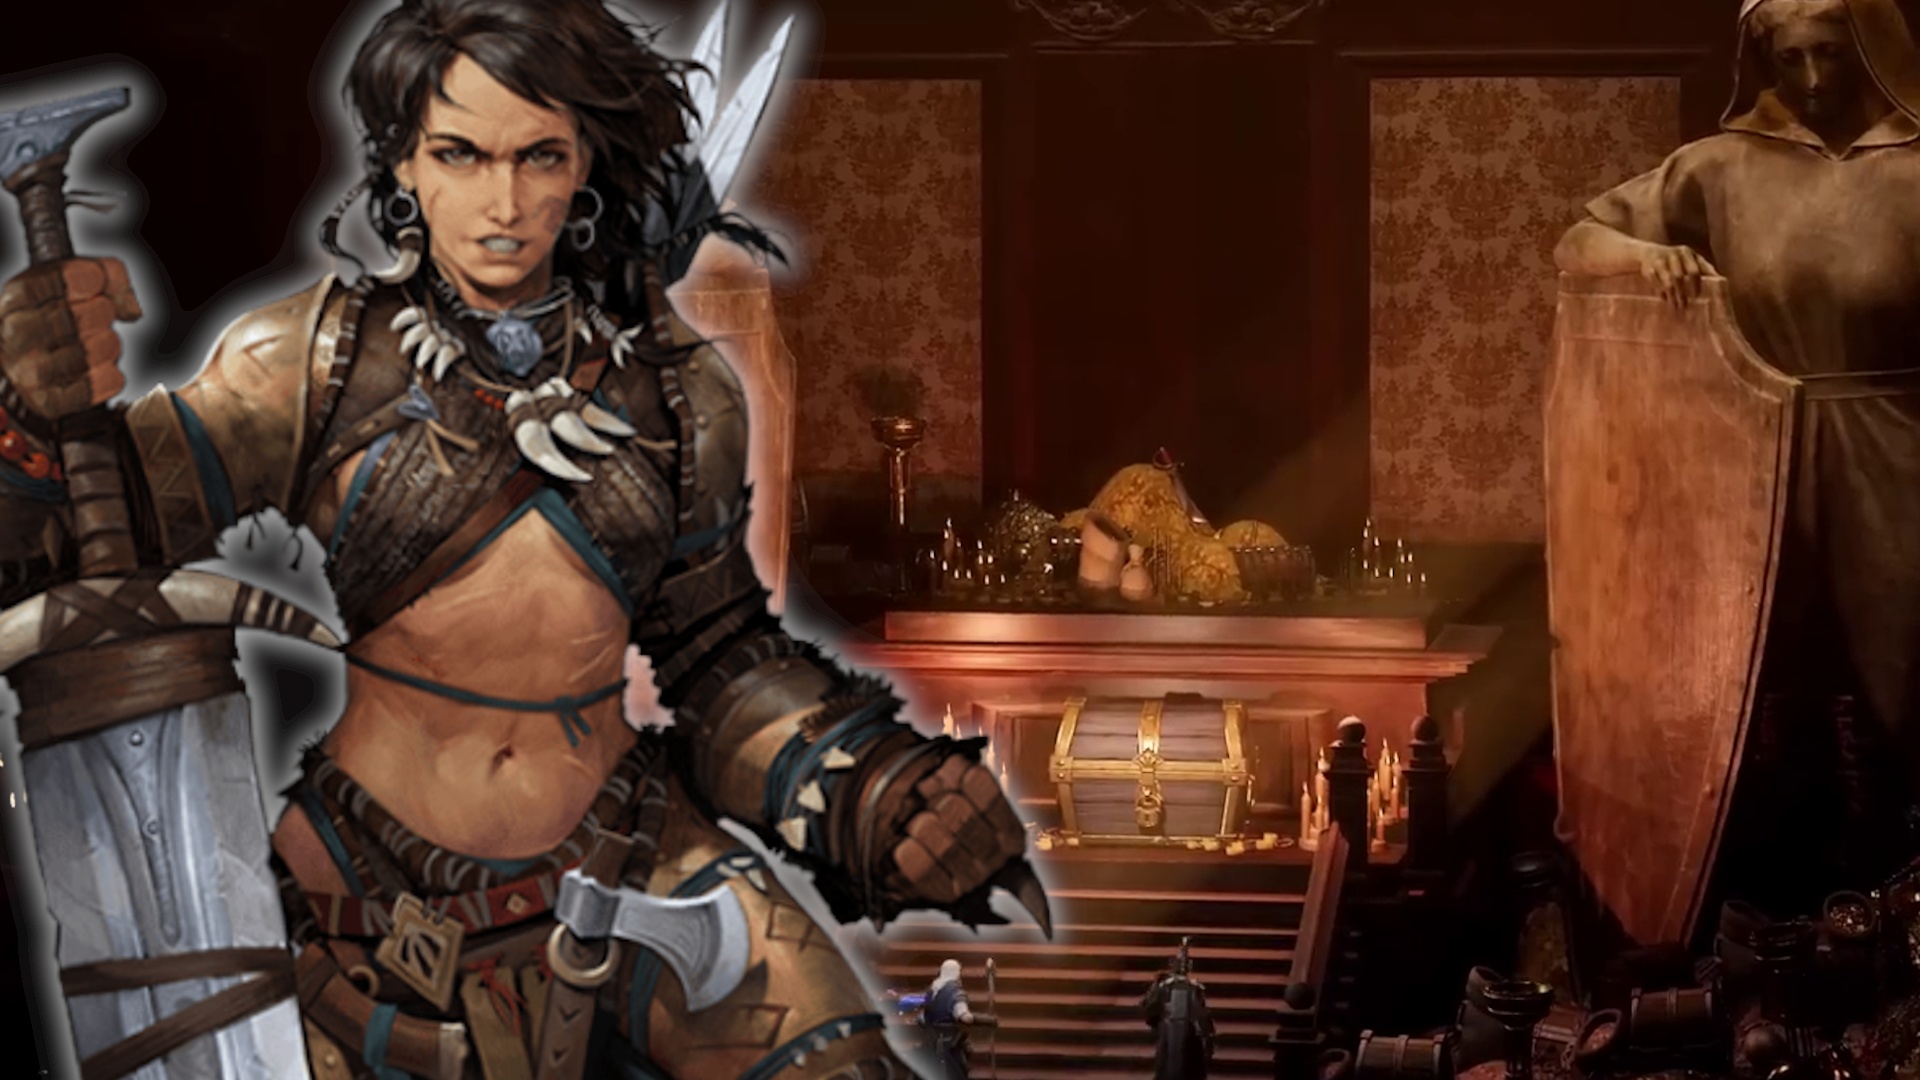 #Diablo trifft Pathfinder: Neues Action-Rollenspiel vereint die beiden Fantasy-Giganten